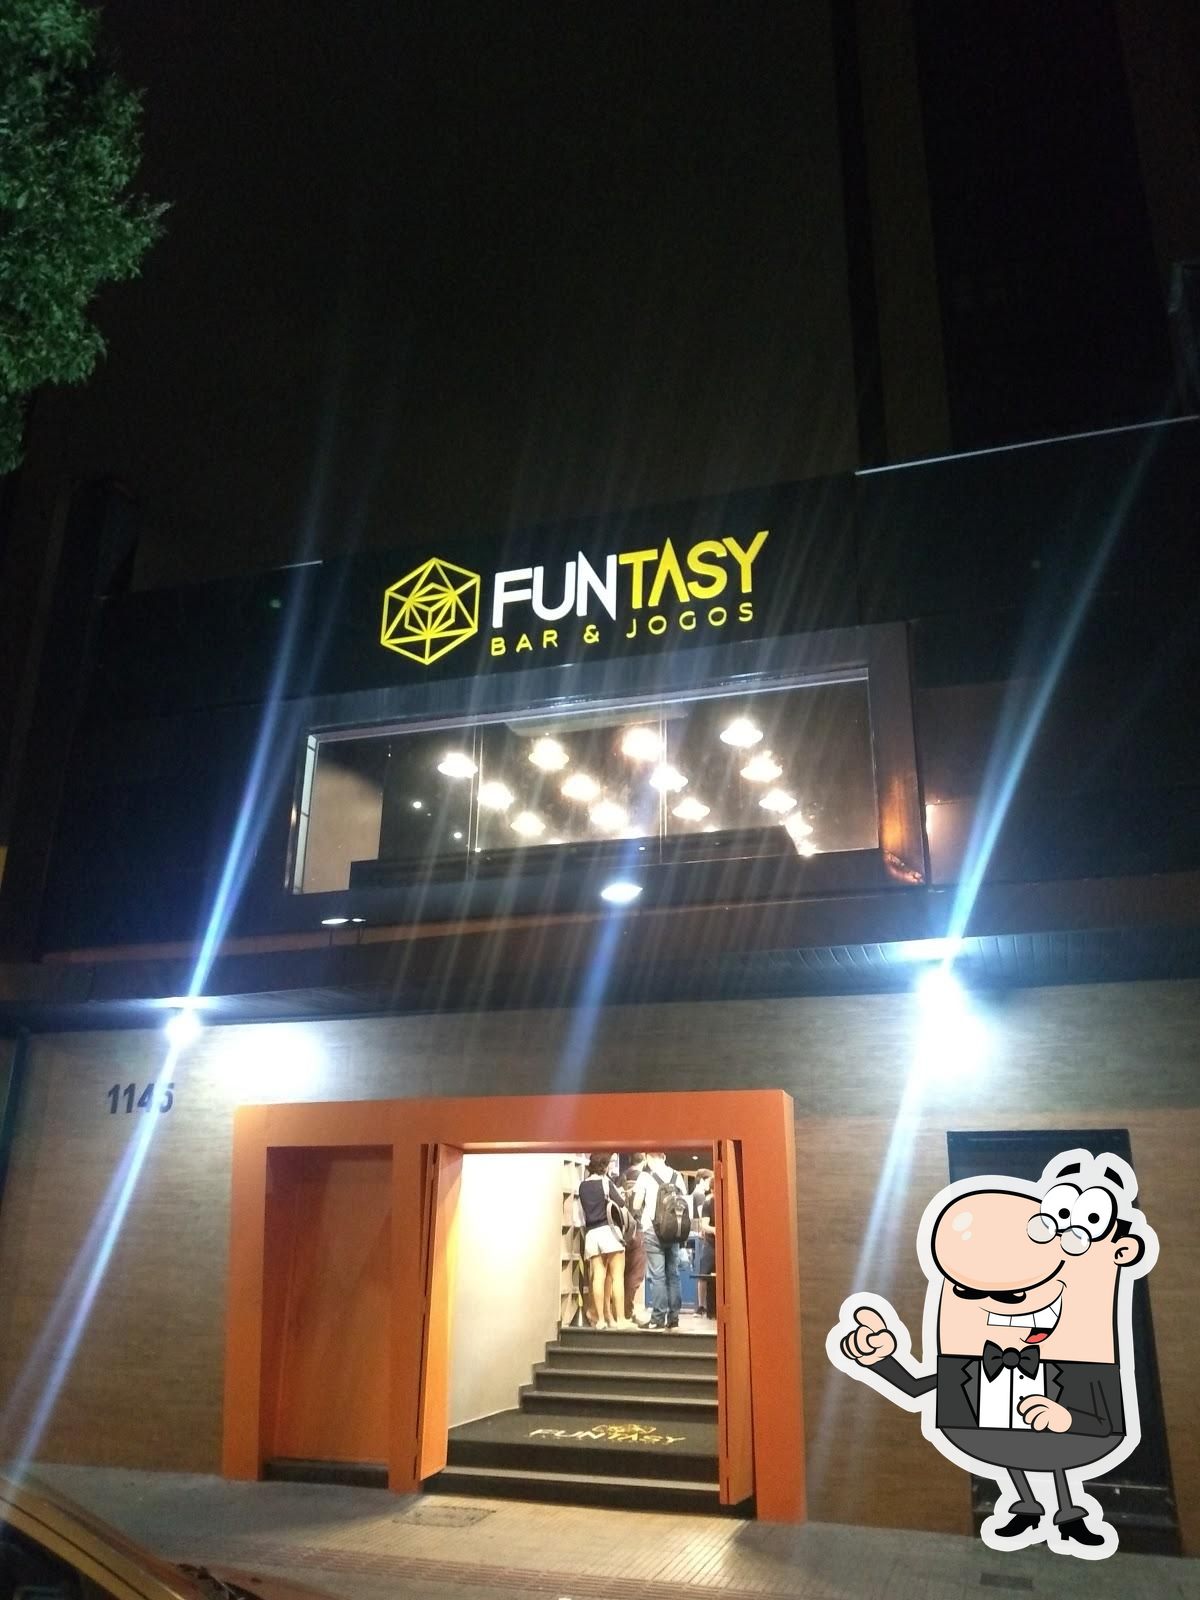 Funtasy Bar E Jogos